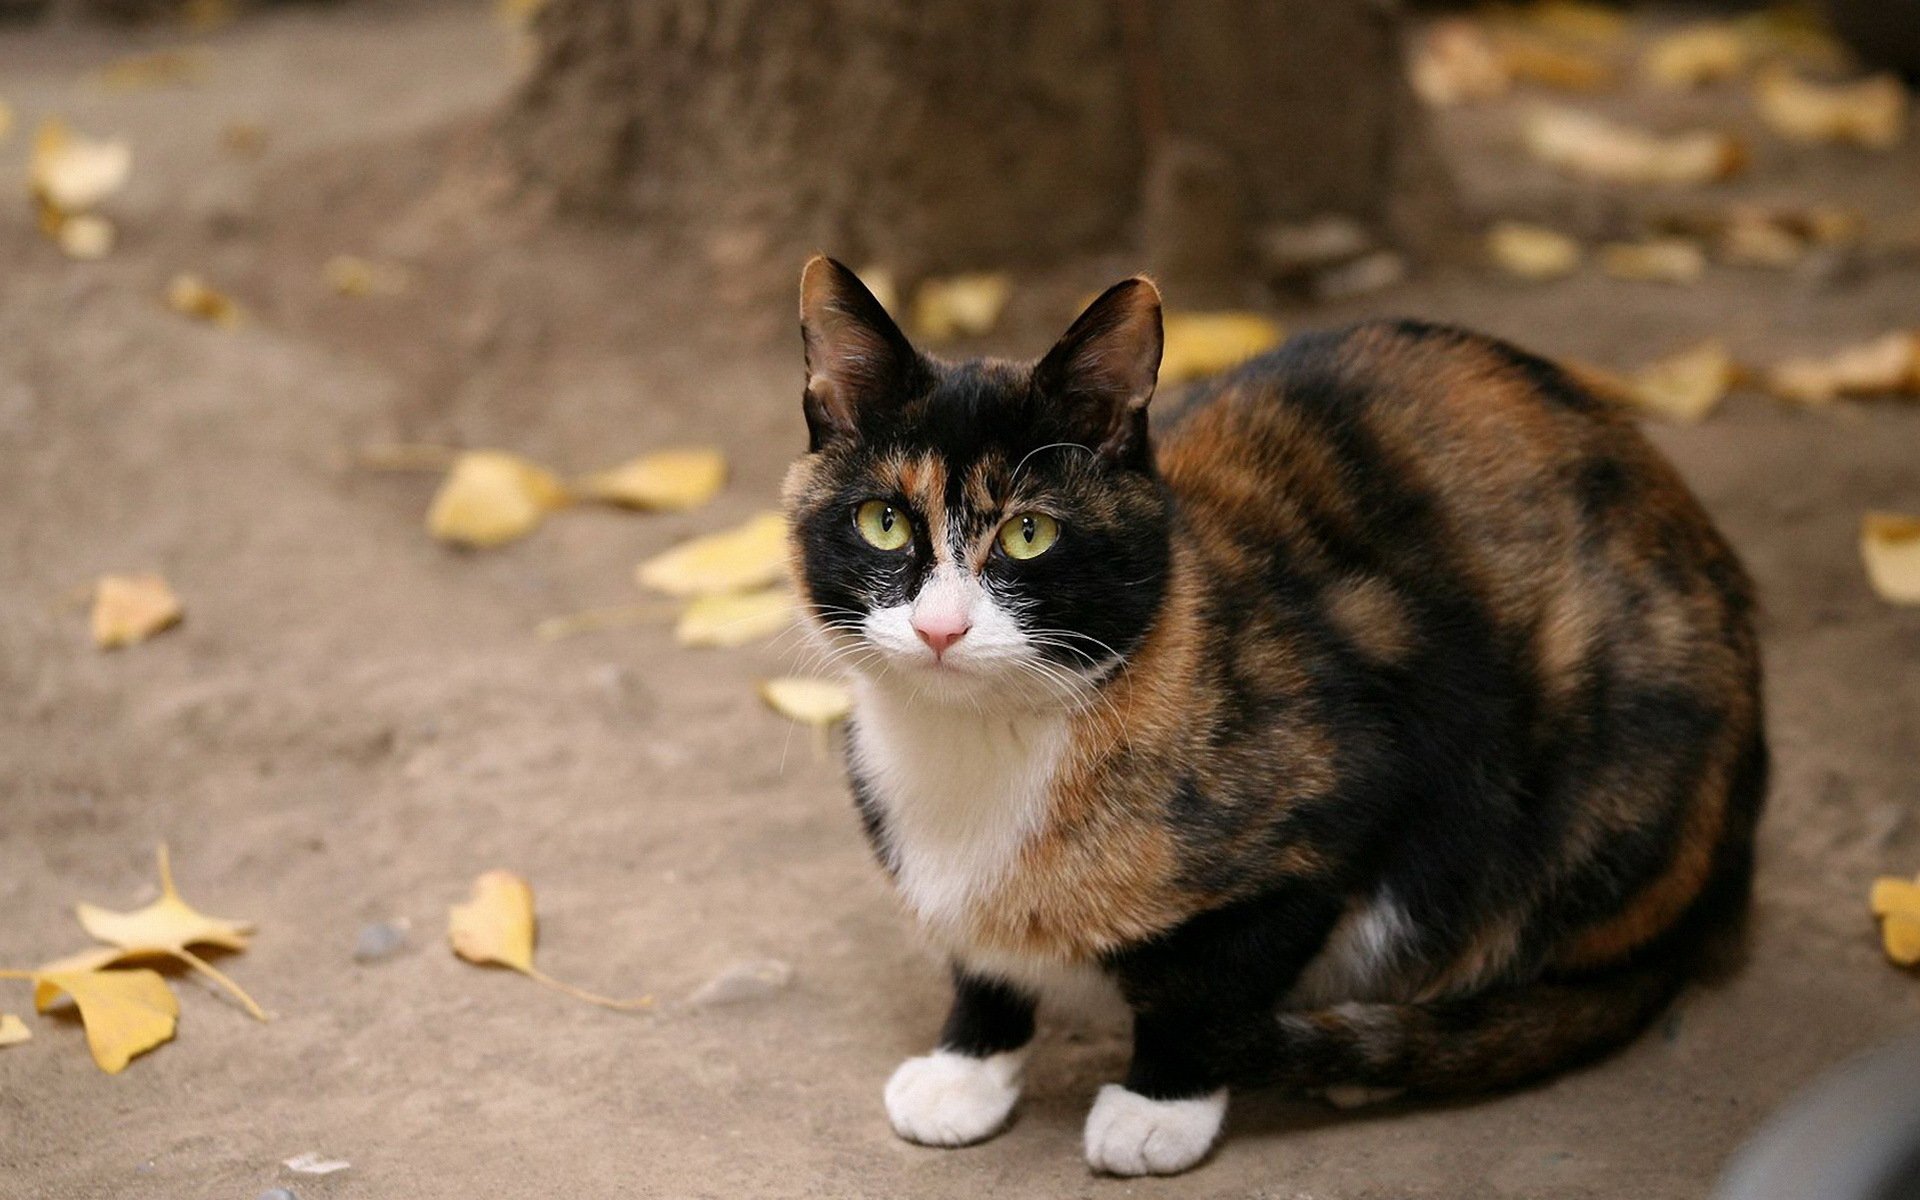 Кошка черная с рыжими пятнами порода. Эгейская кошка трехцветная. Черепаховая кошка Калико. Европейская черепаховая кошка. Трехшерстная кошка черная.